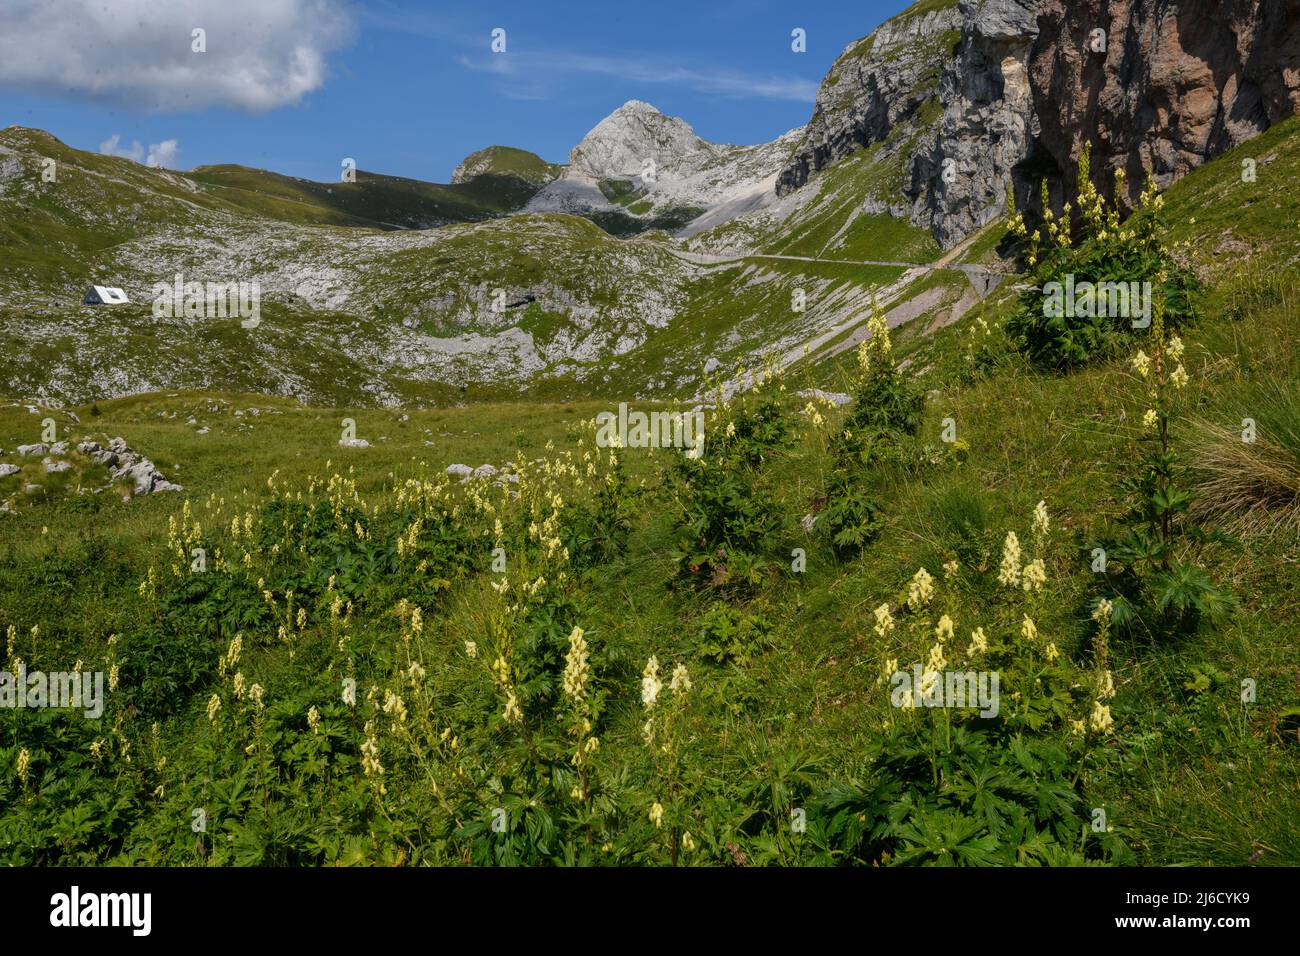 Un Monkshood Amarillo, o Wolfsbane, Aconitum lamarckii, en las laderas de Mangart, los Alpes Julianos, Eslovenia. Foto de stock